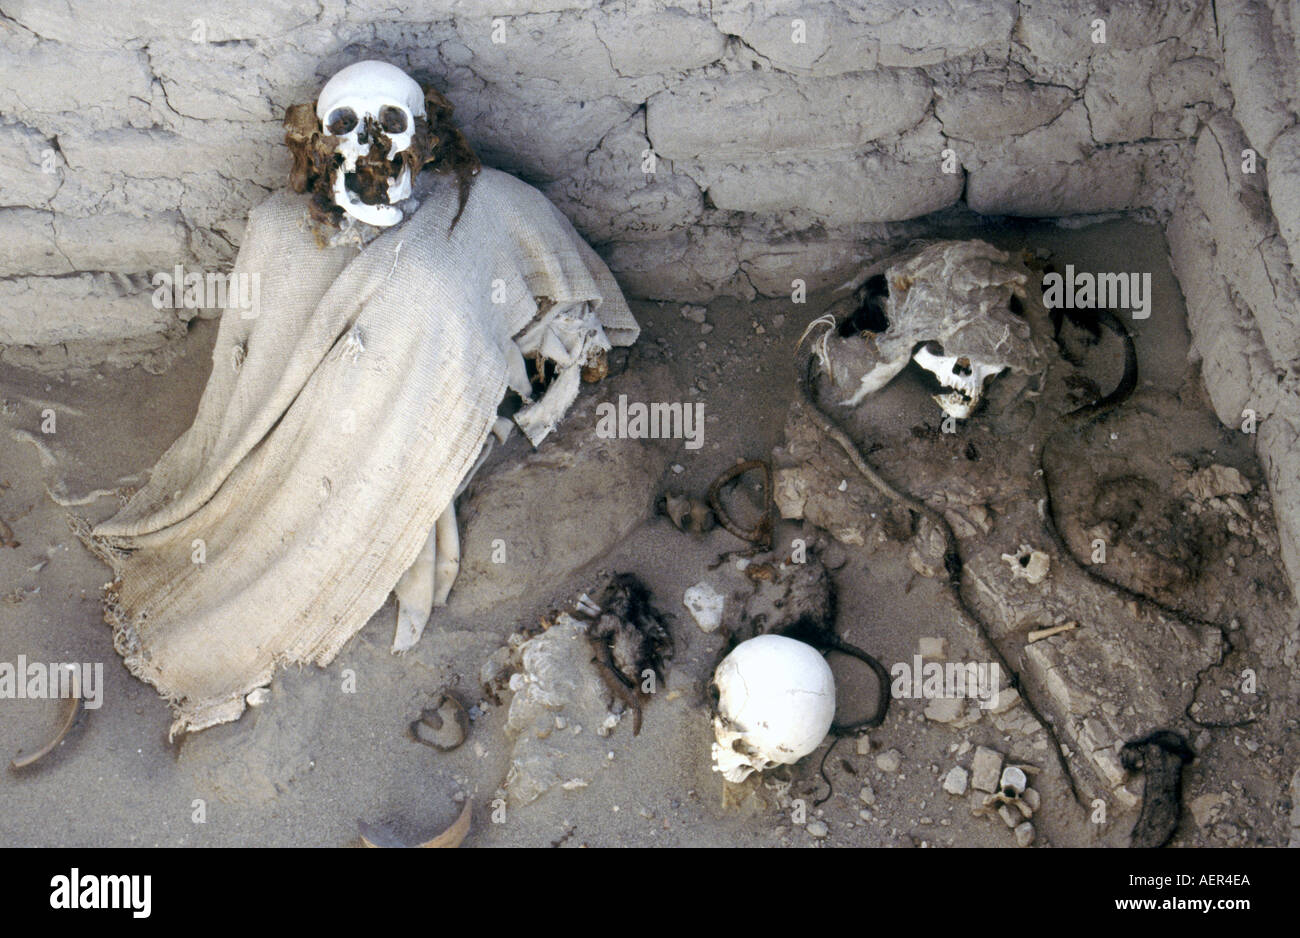 Mummified human remains at Chauchilla cemetery Nazca Peru South America Stock Photo